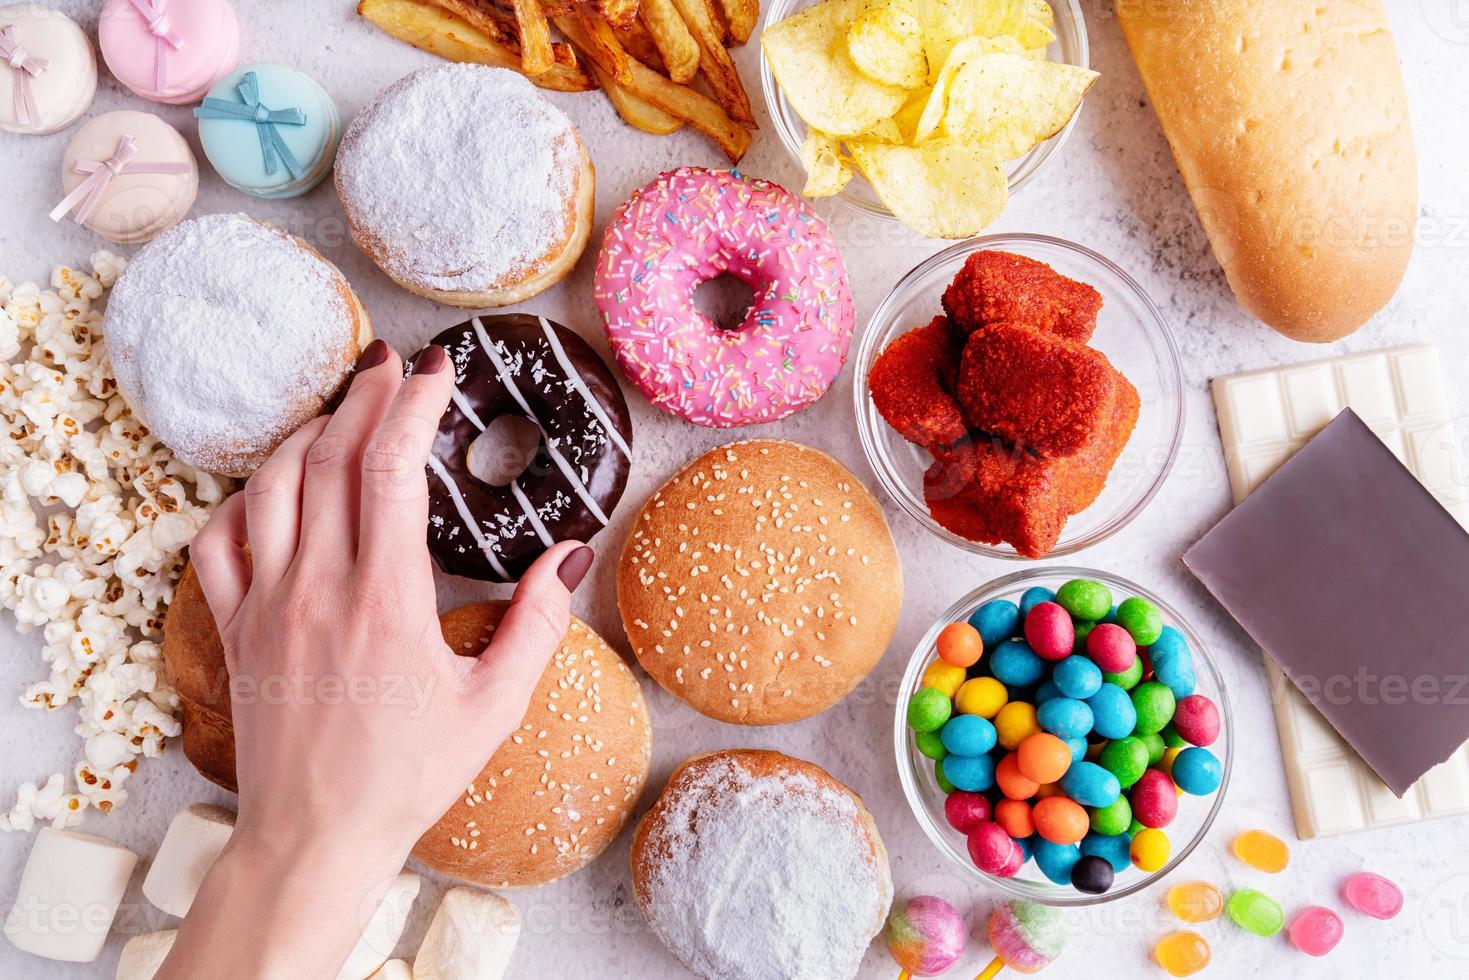 nourriture malsaine et restauration rapide avec beignets, chocolat, hamburgers et bonbons vue de dessus photo